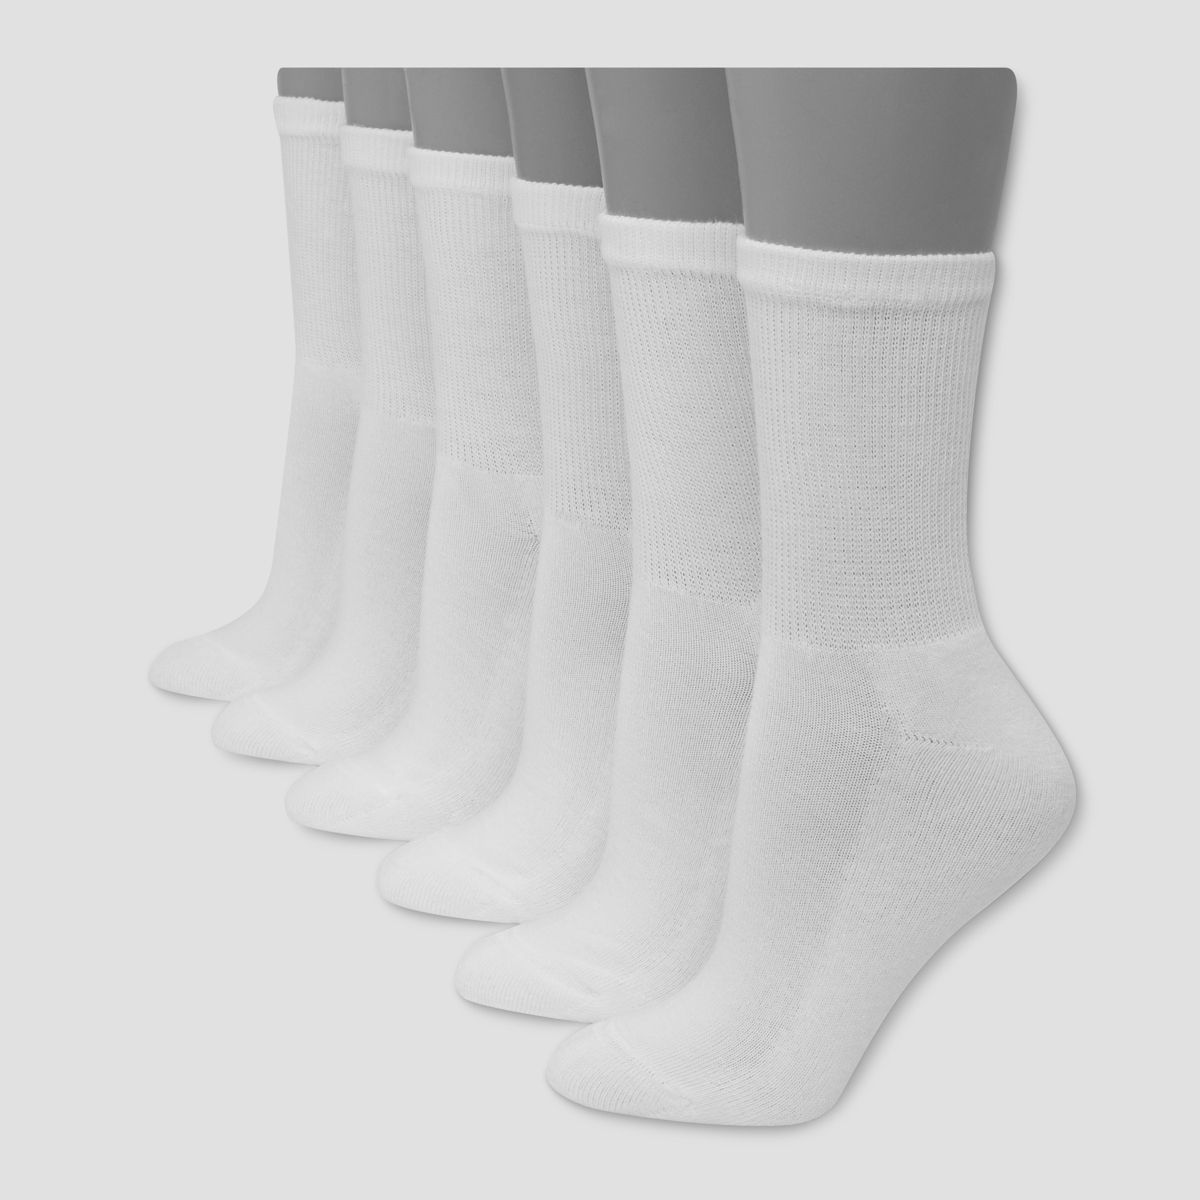 Hanes Premium 6 Pack Women's Cushioned Crew Socks - White 5-9 | Target